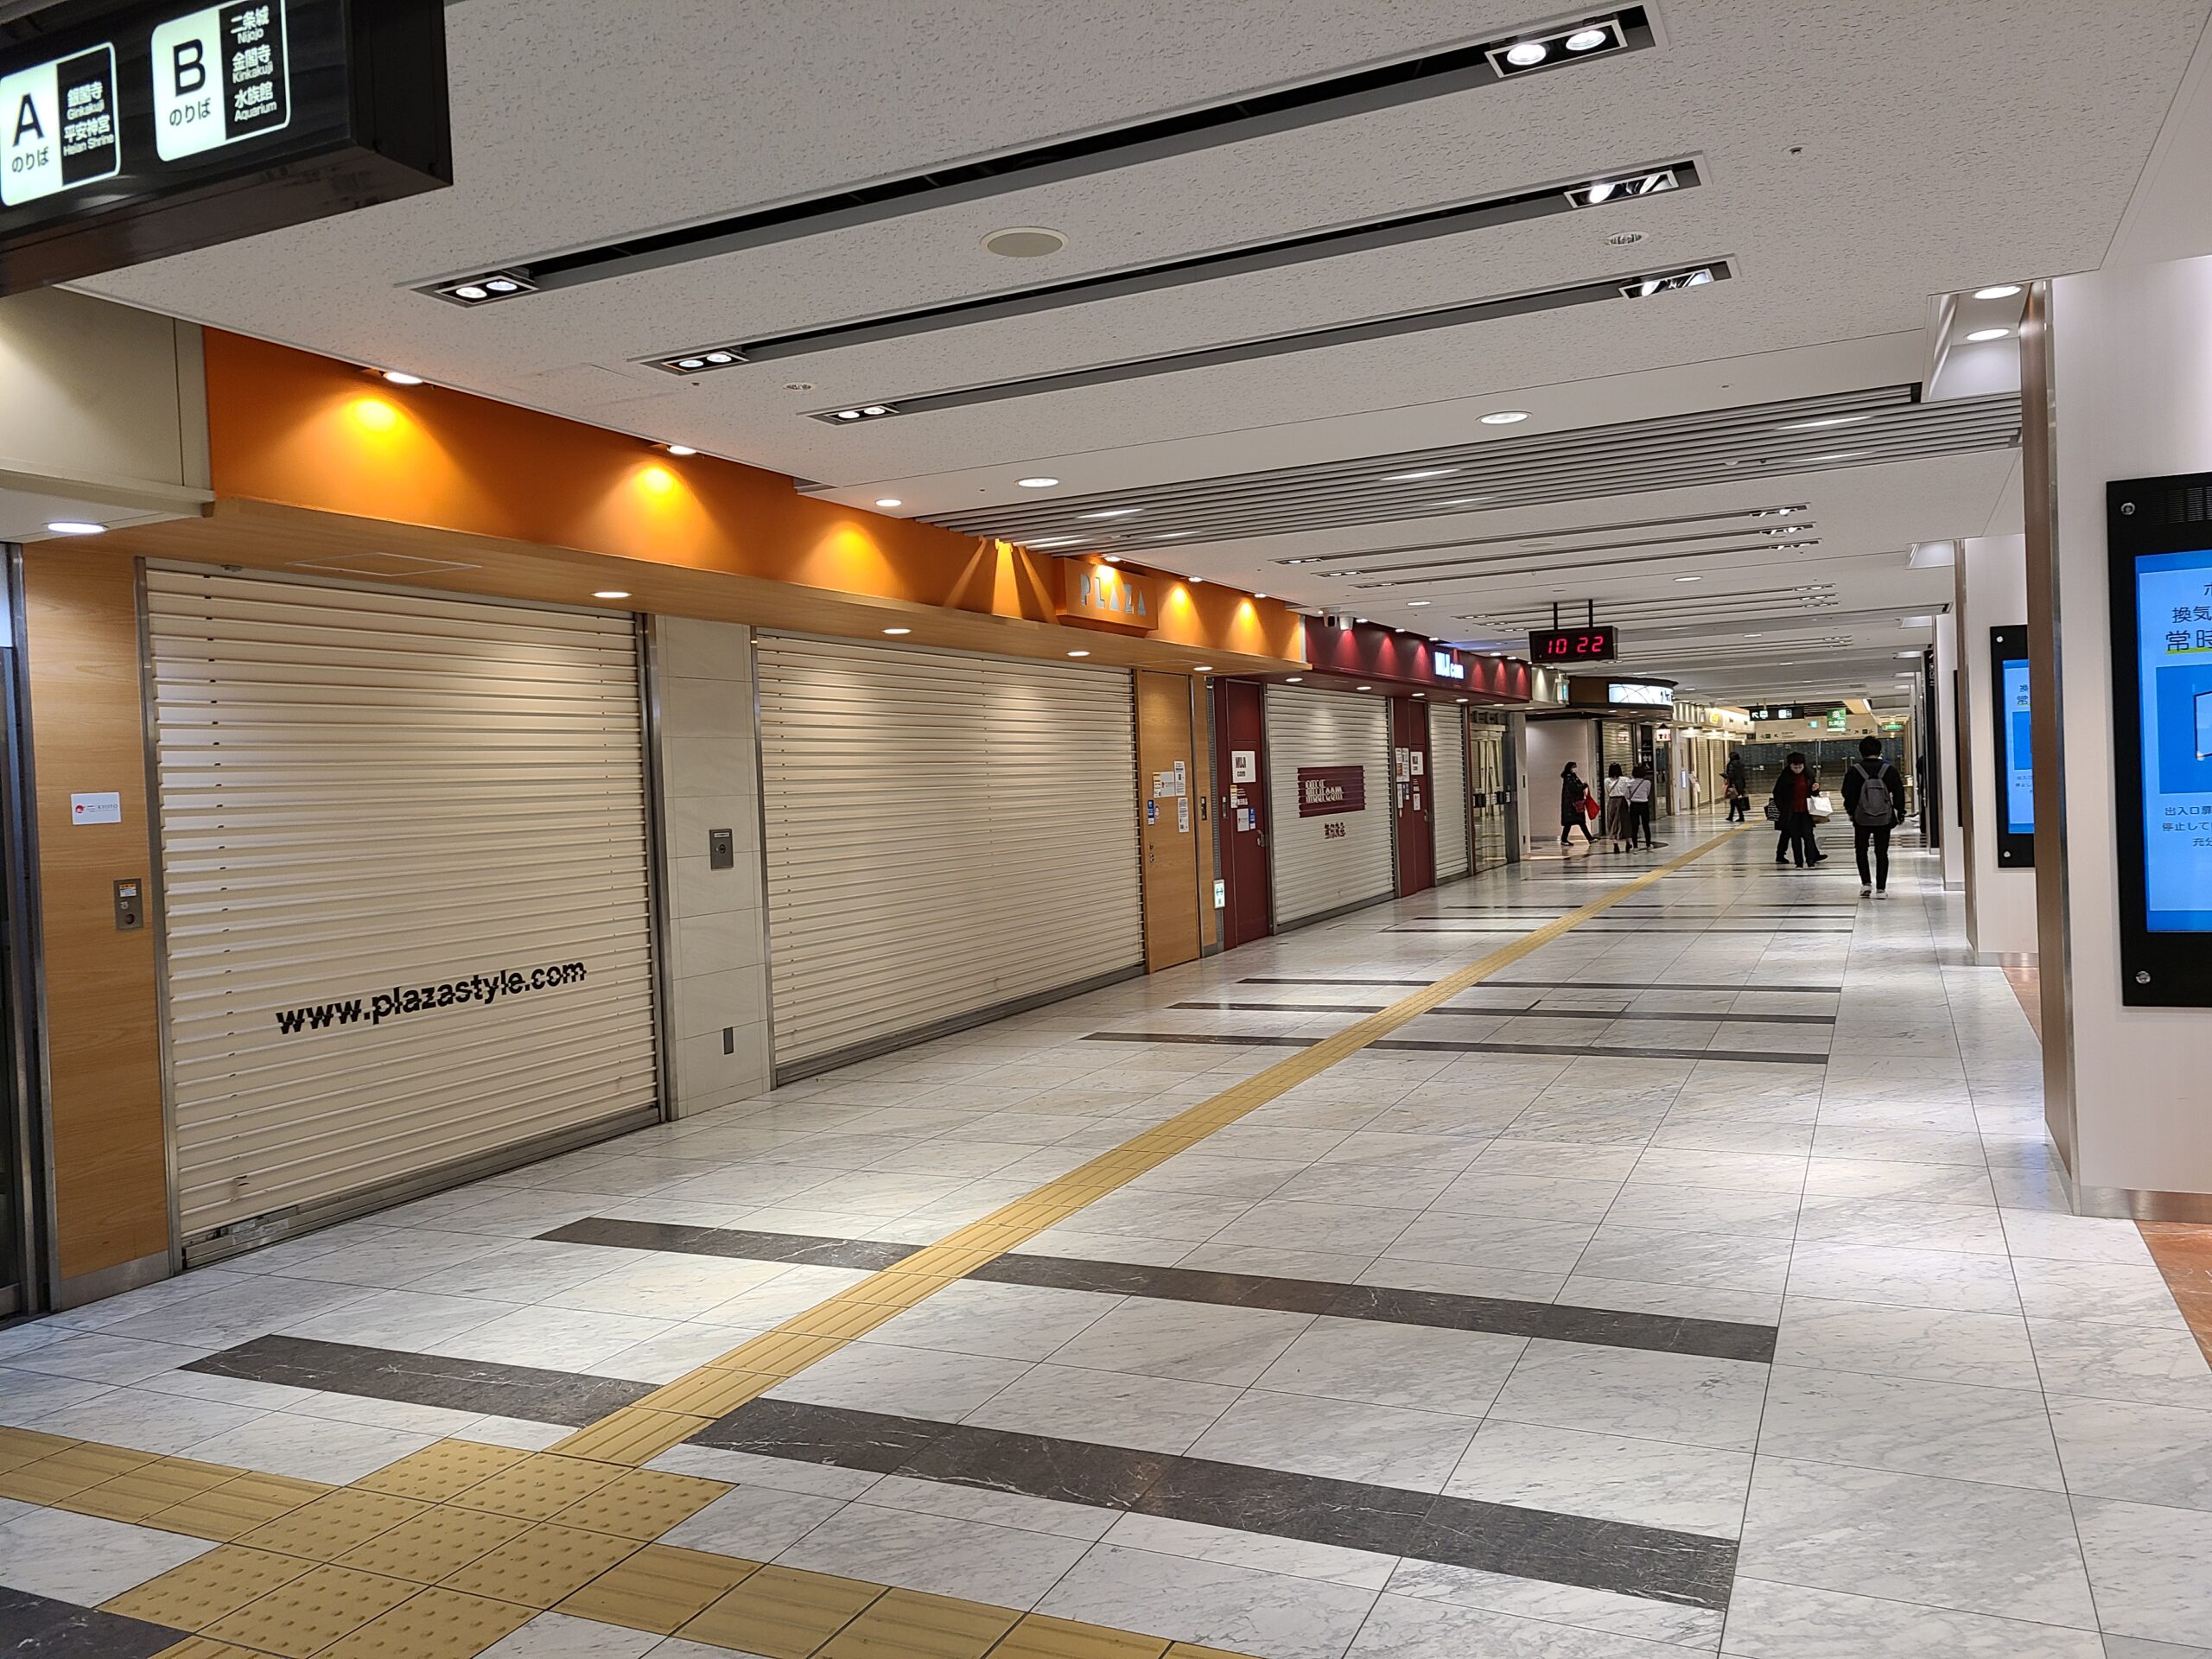 京都駅周辺の人出は少なく　新型コロナで外出自粛影響か